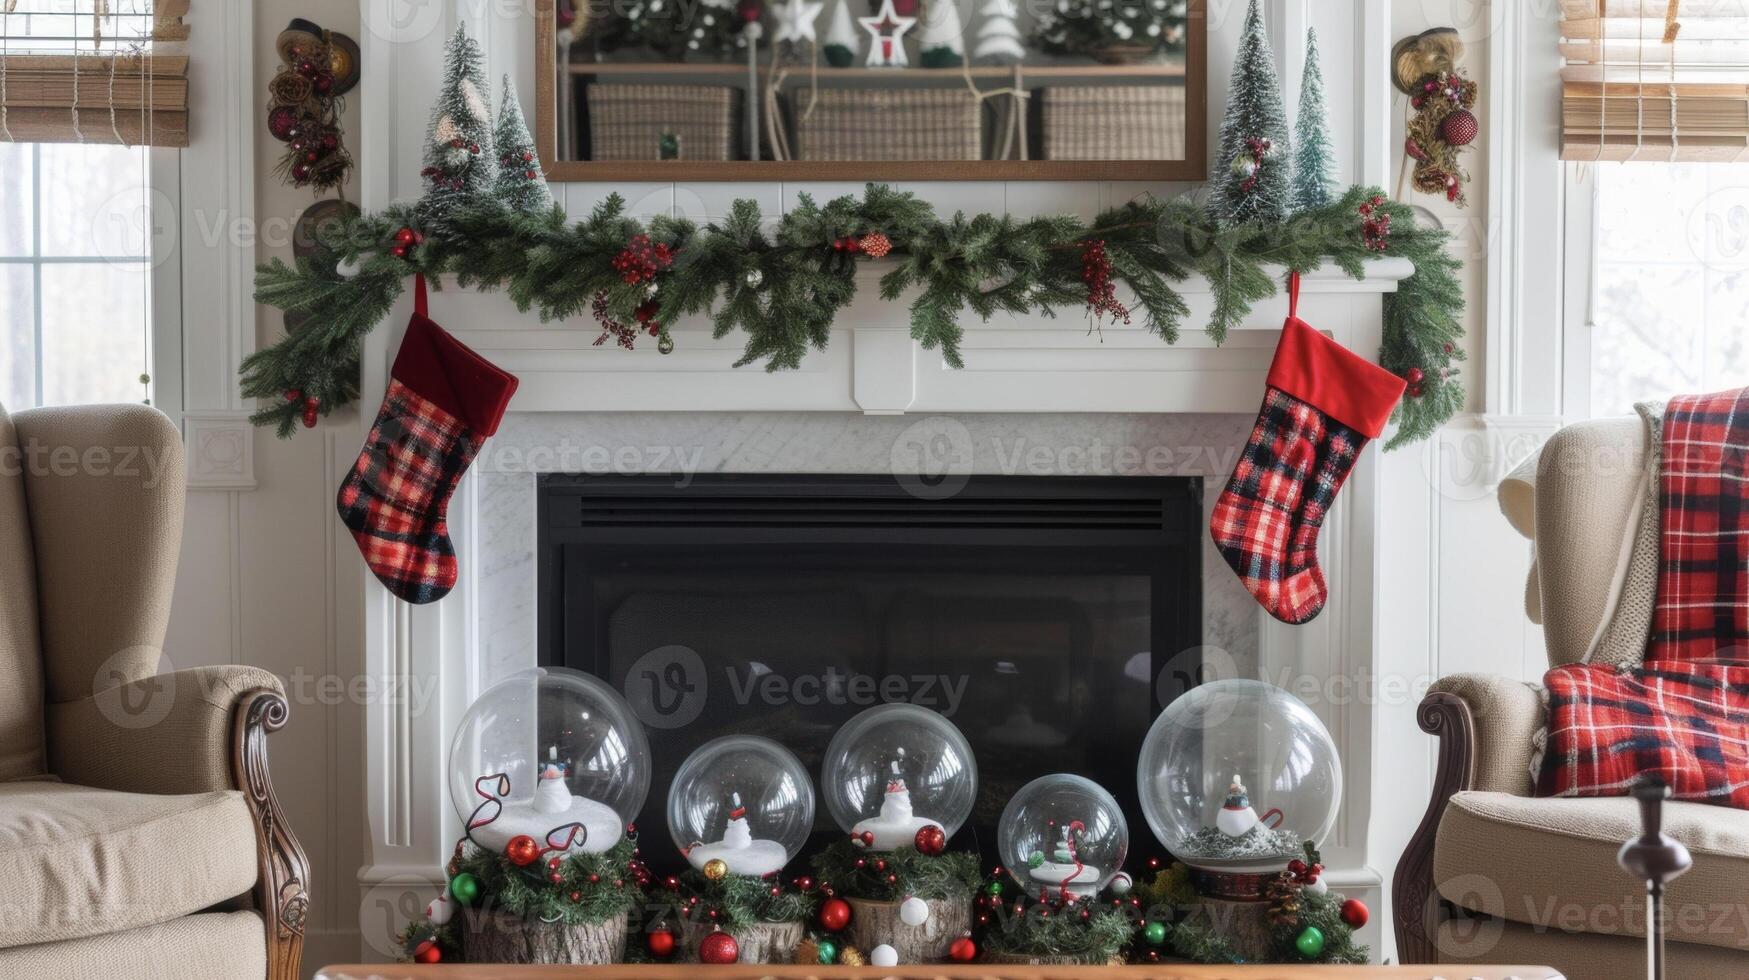 een haard schoorsteenmantel versierd met hulst slingers hangende kousen en een verzameling van diy sneeuw bollen toevoegen een tintje van magie naar de winter decor foto